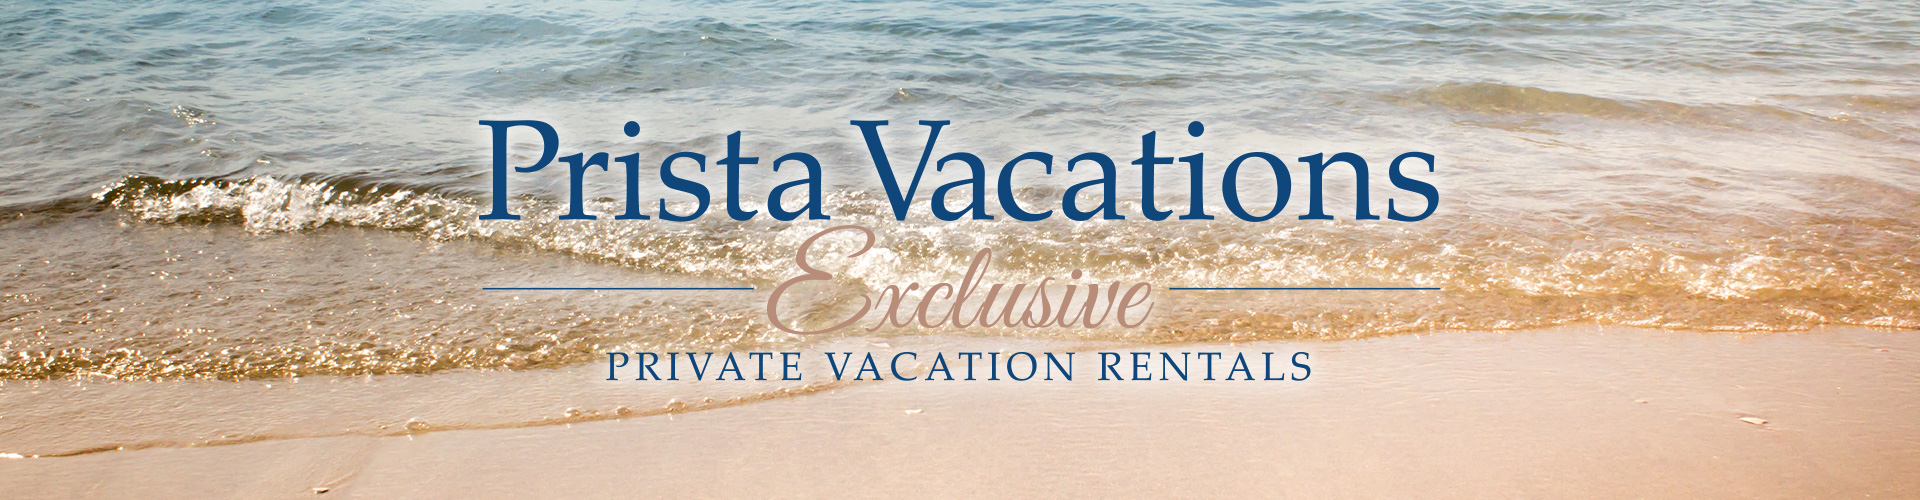 Prista Vacation Rentals Banner